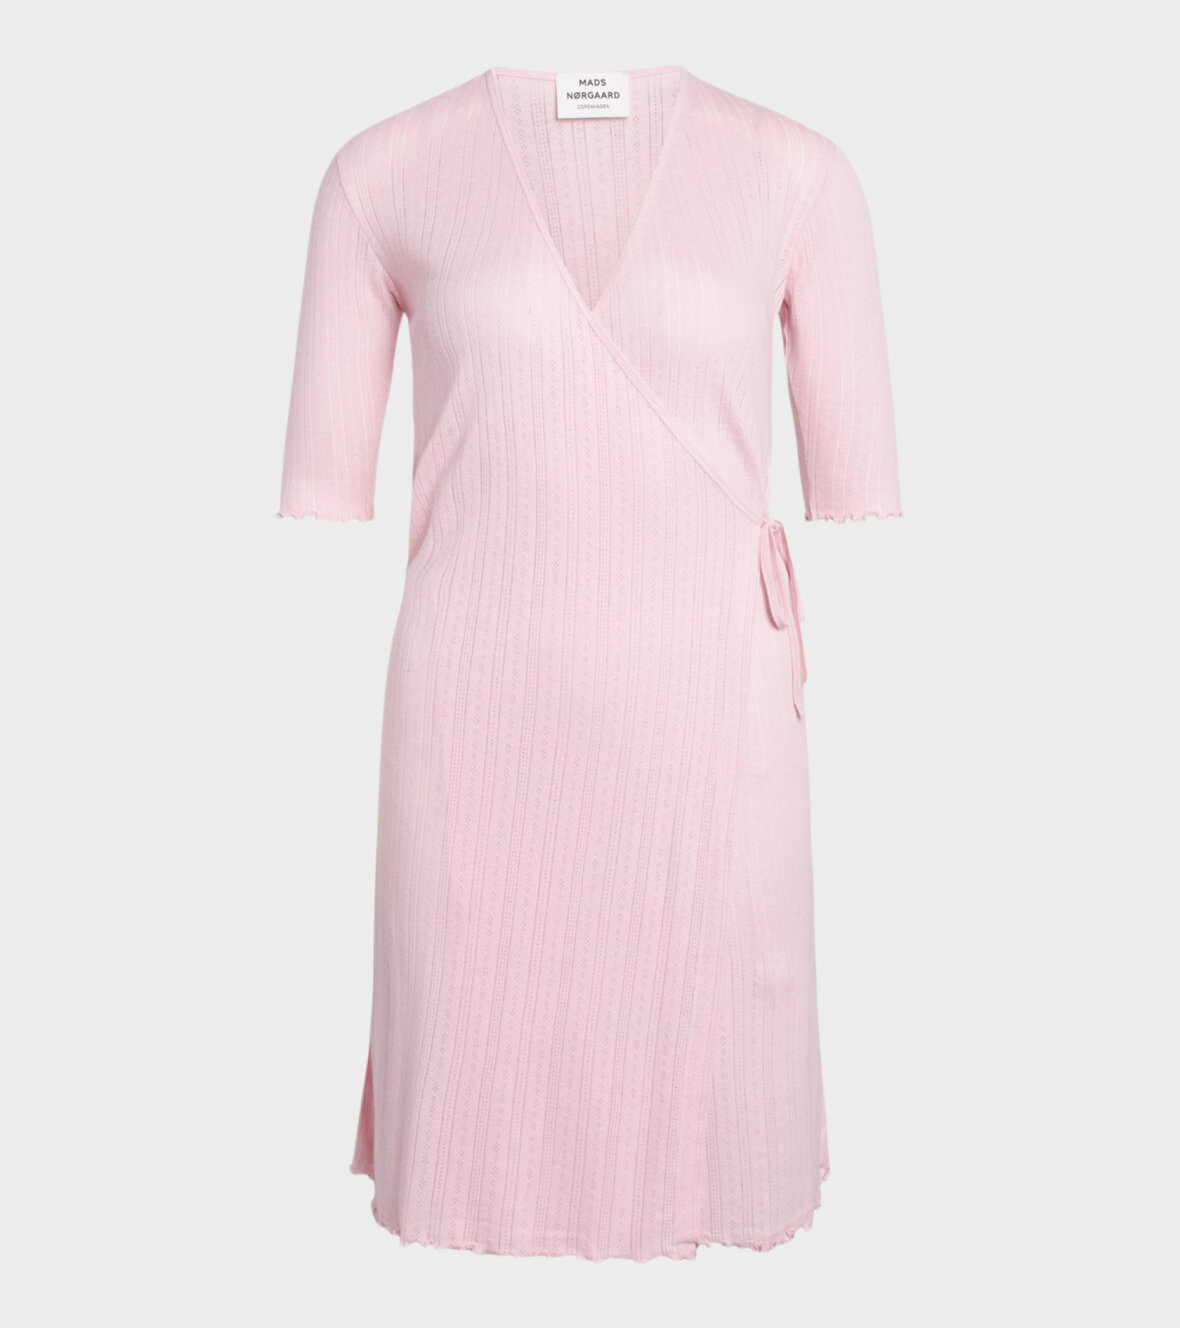 dr. Adams - Mads Nørgaard Dress Light Pink